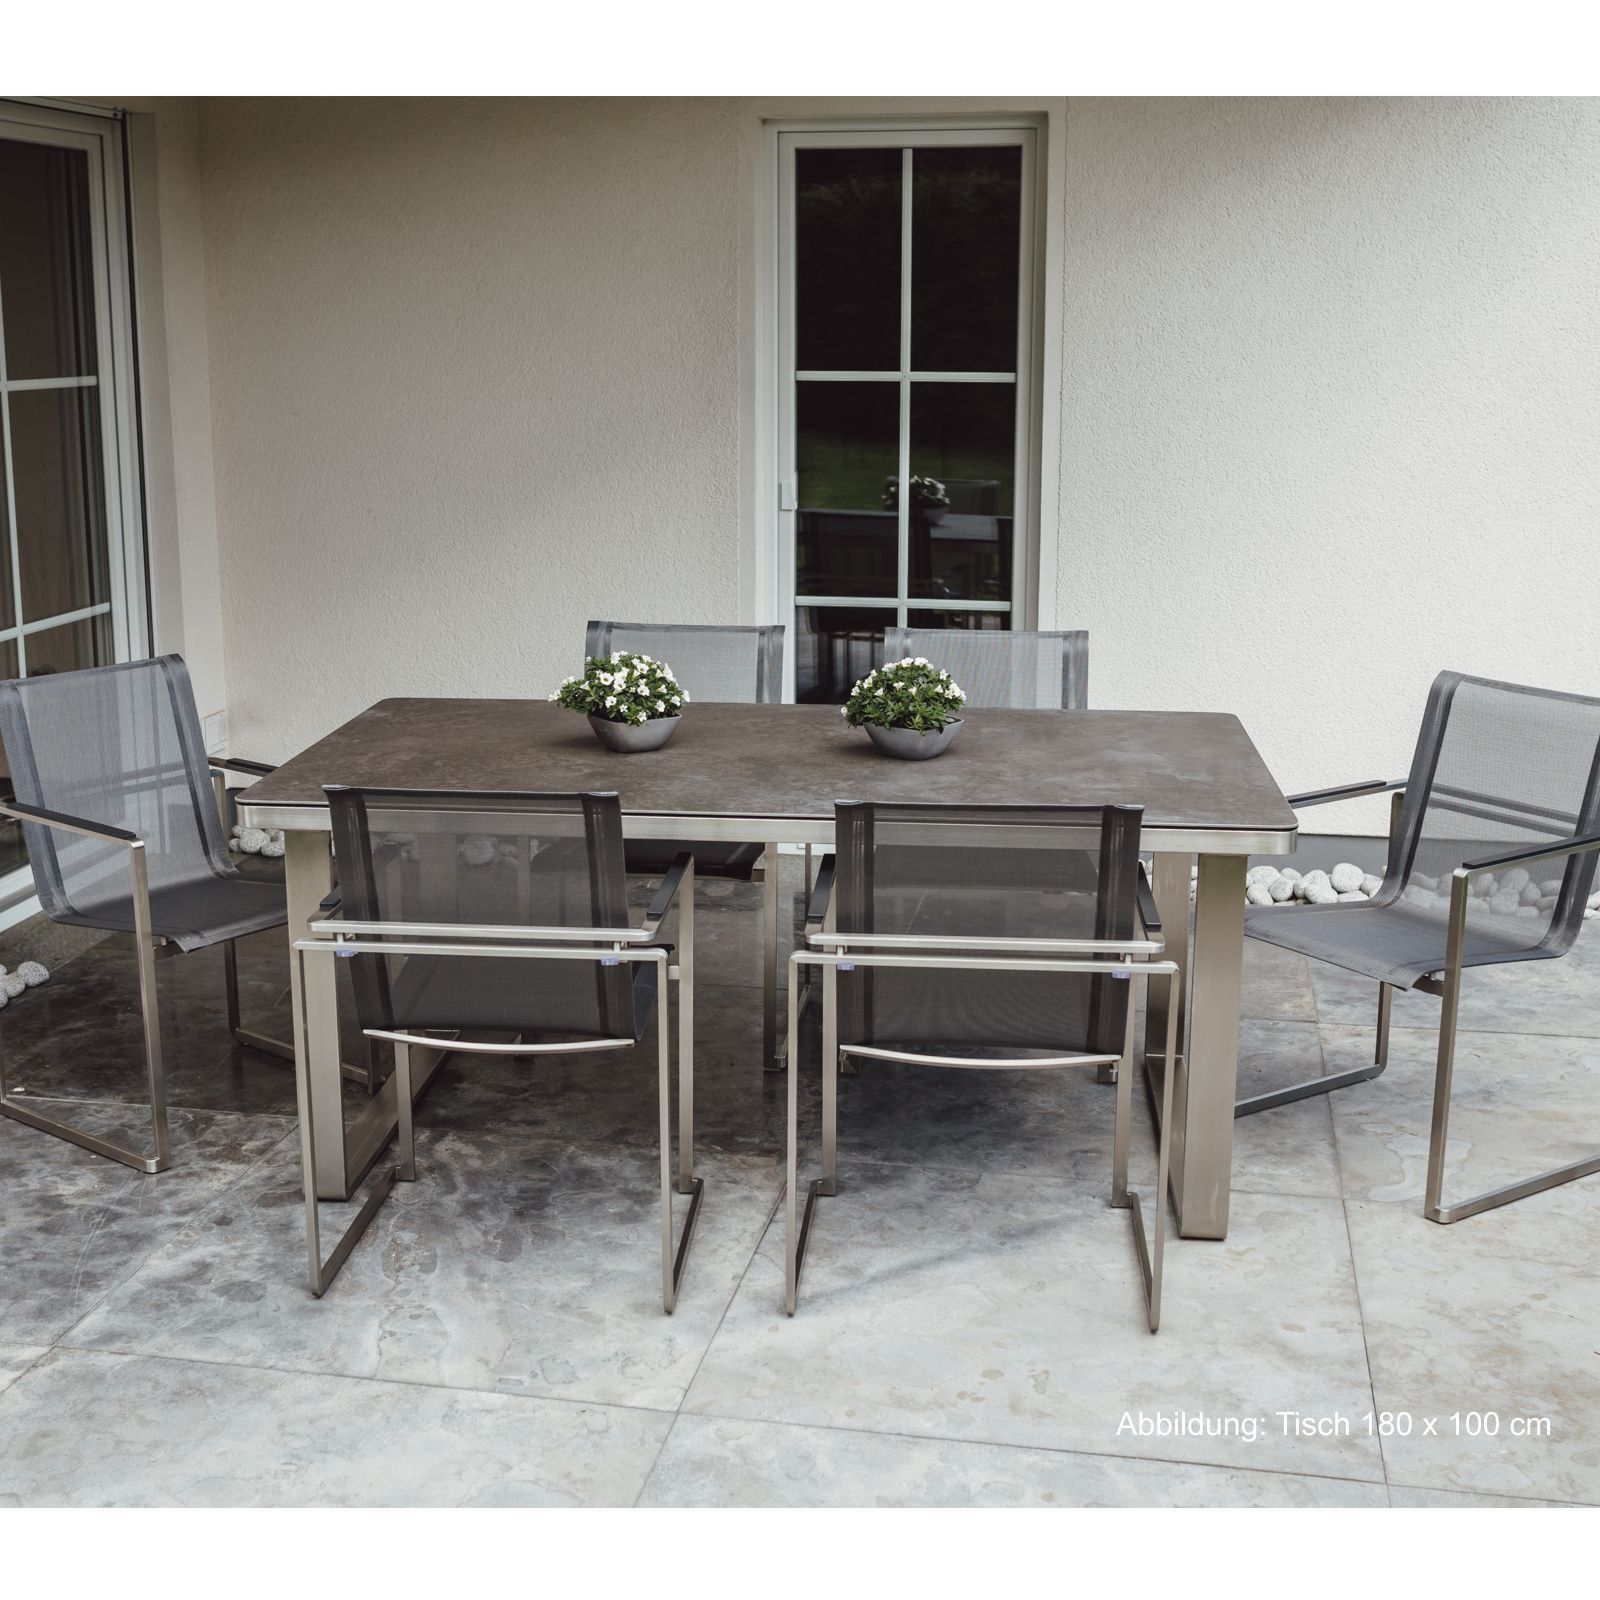 Ensemble de meubles de jardin : 6 chaises et 1 table en acier inoxydable et plateau de table en vitrocéramique